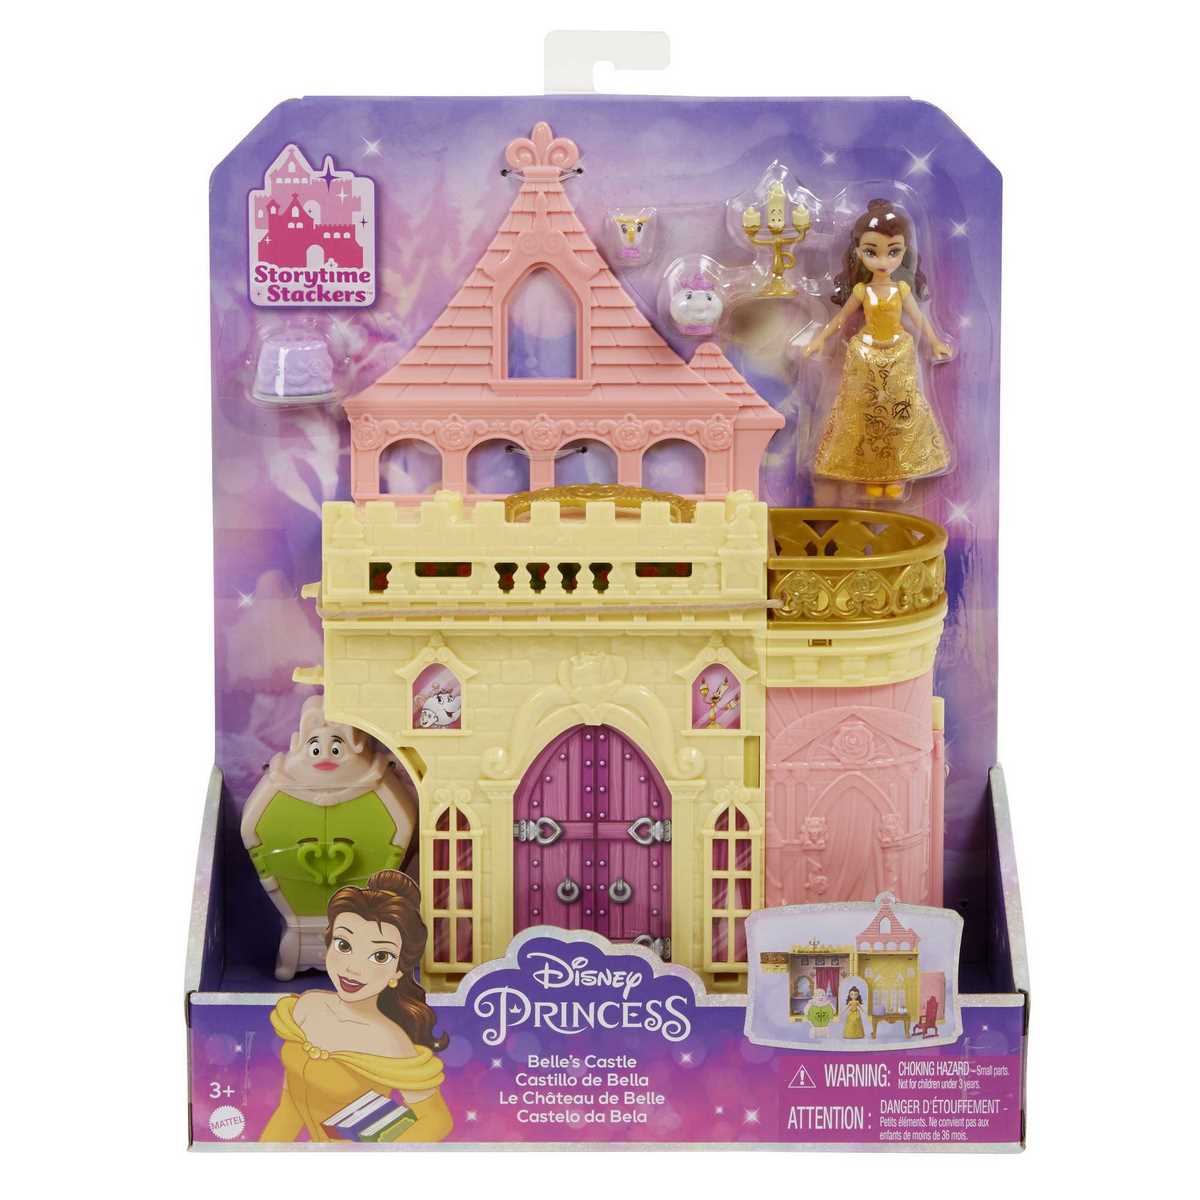 Princesse Disney - Reine Des Neiges - Coffret Histoire Chateau D